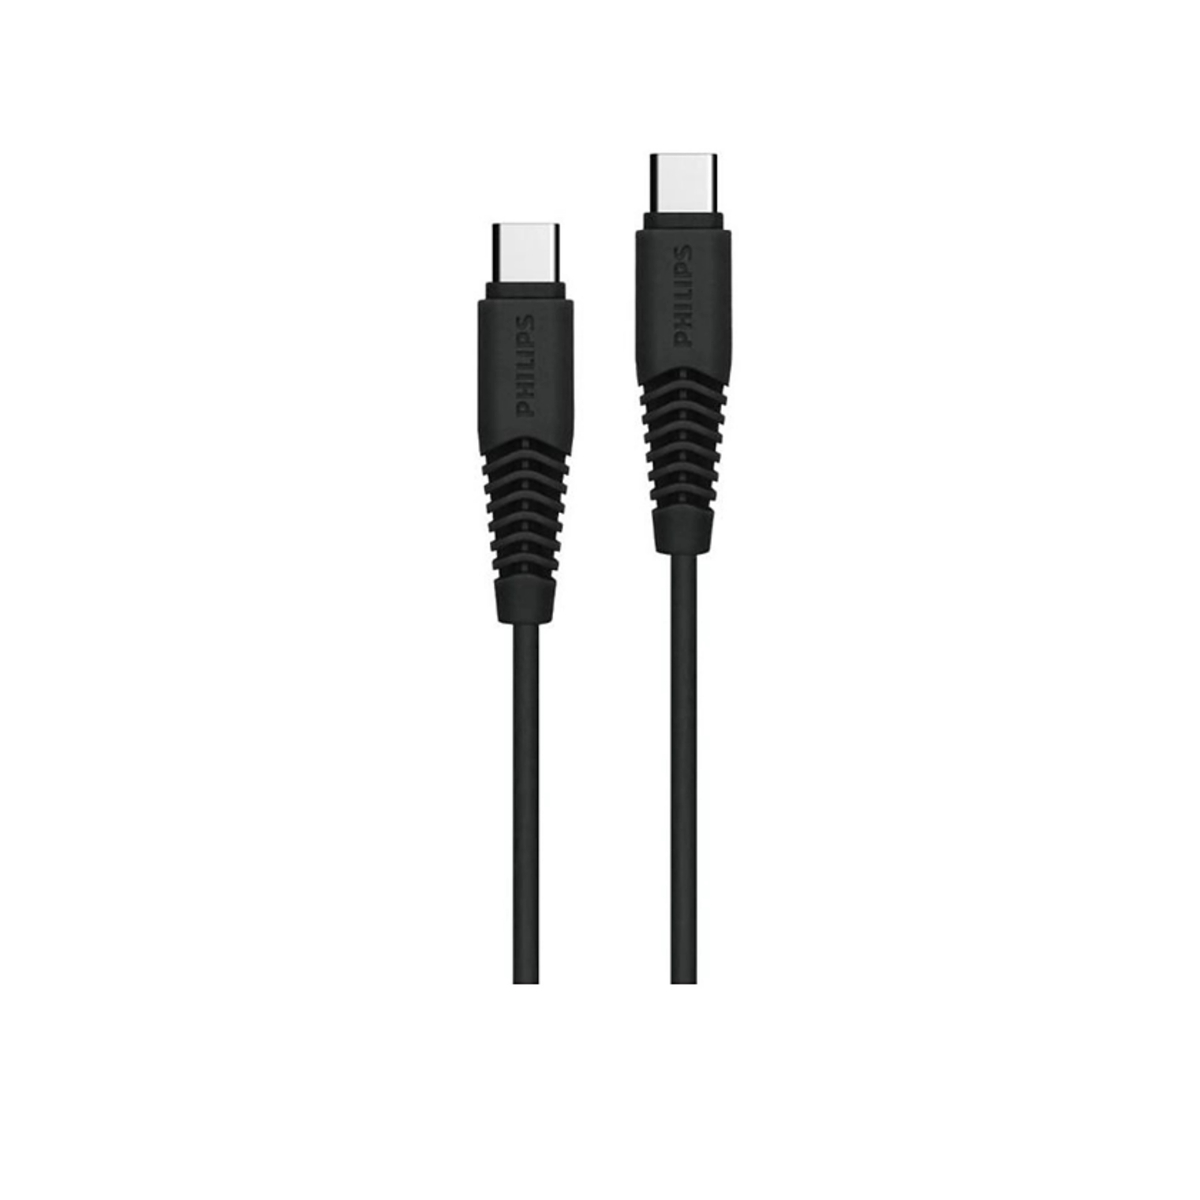 فيليبس USB-C إلى كابل USB-C، 1.2 متر، أسود، DLC5531CB/97